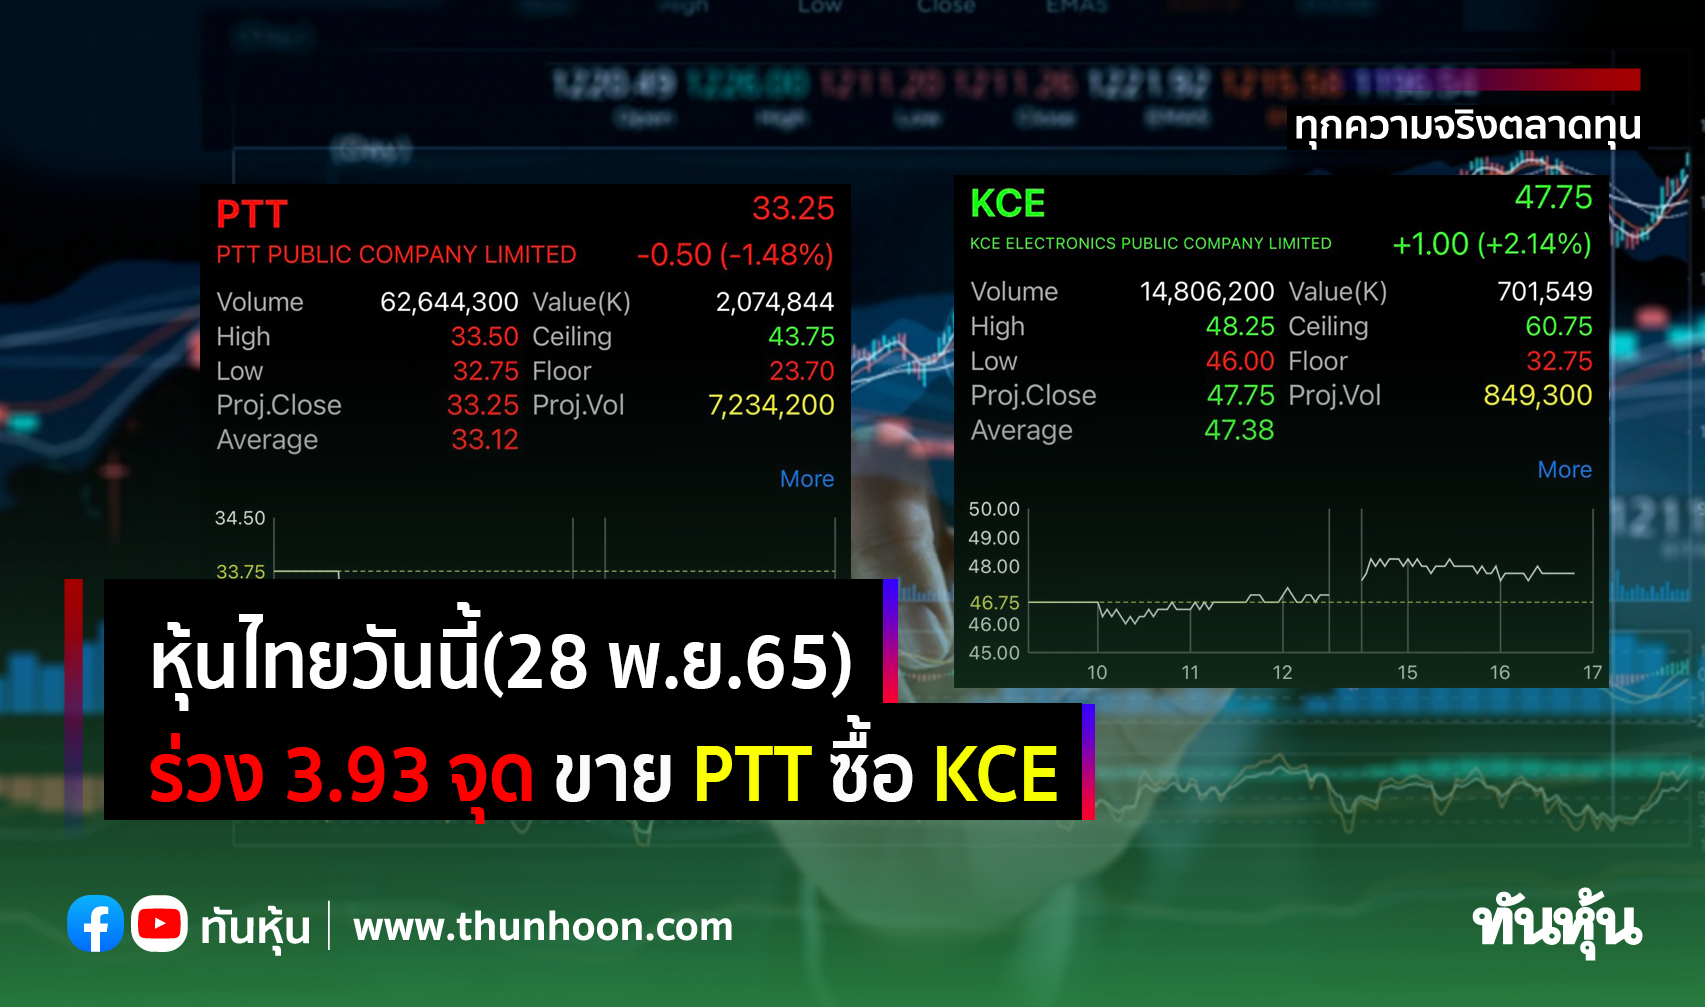 หุ้นไทยวันนี้(28 พ.ย.65) ร่วง 3.93 จุด ขาย PTT ซื้อ KCE 